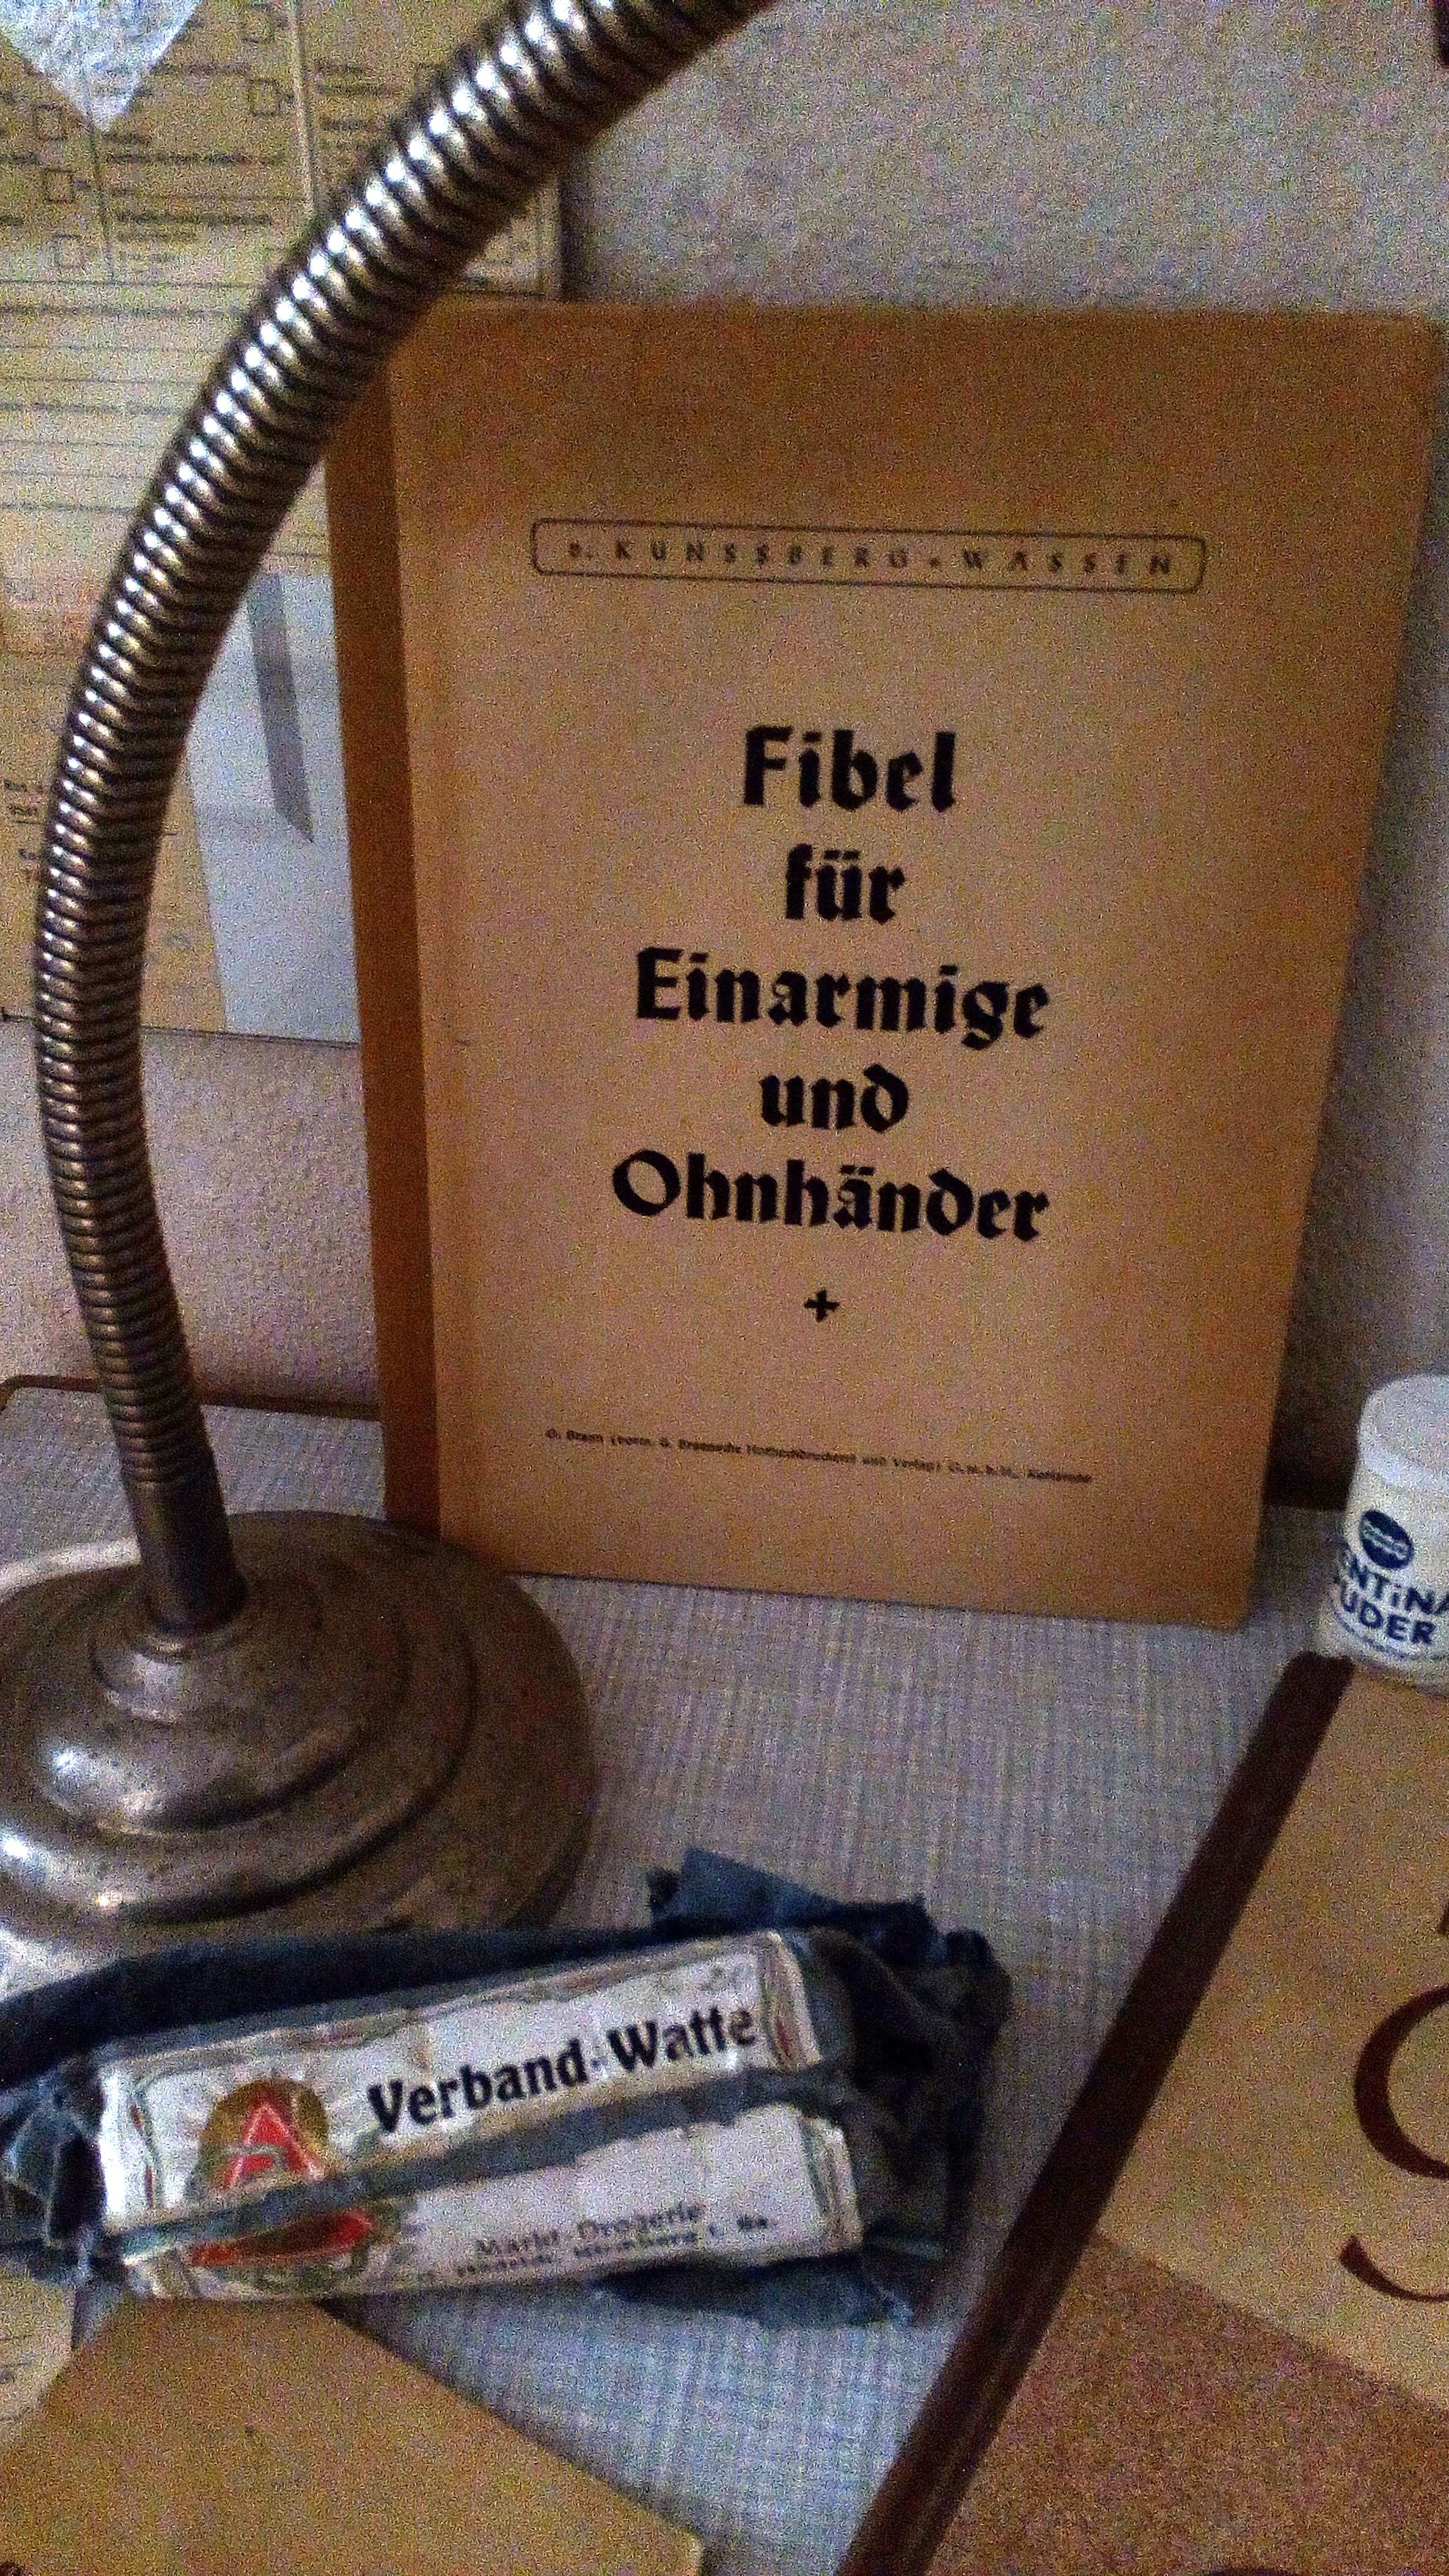 Fibel für Einarmige und Ohnhänder im DDR Museum